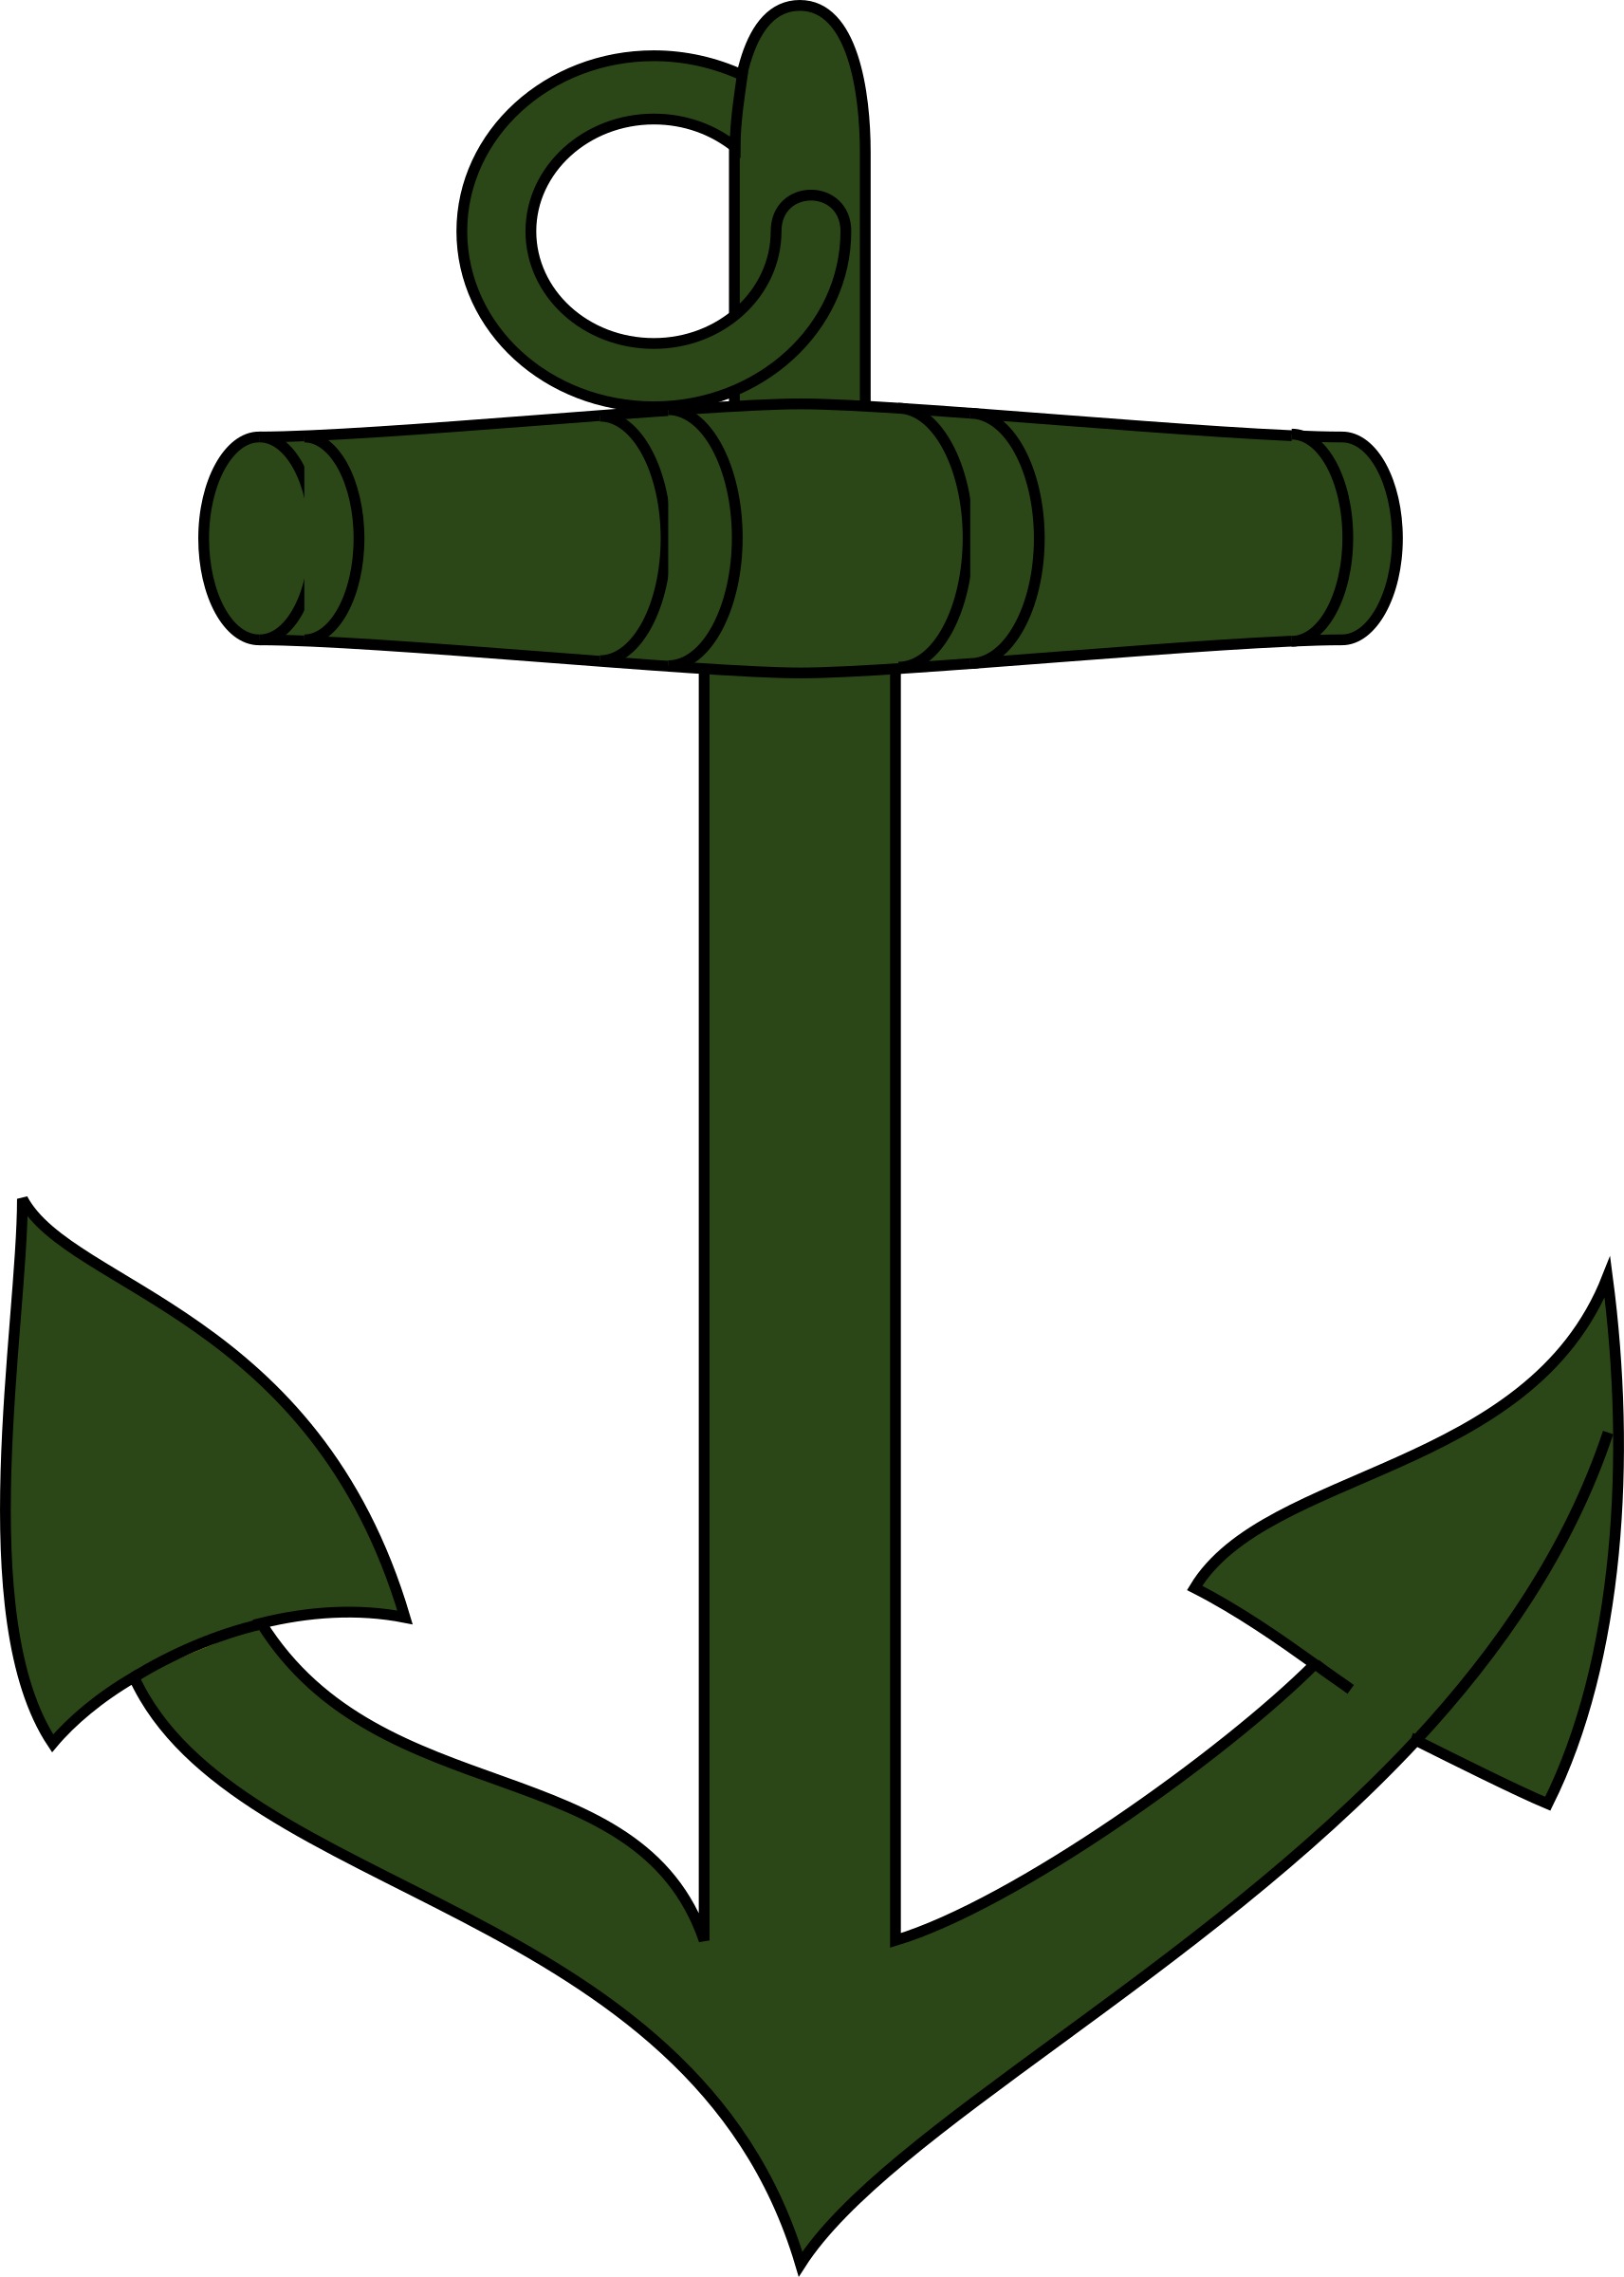 Green anchor vector clipart - Free Public Domain Stock Photo